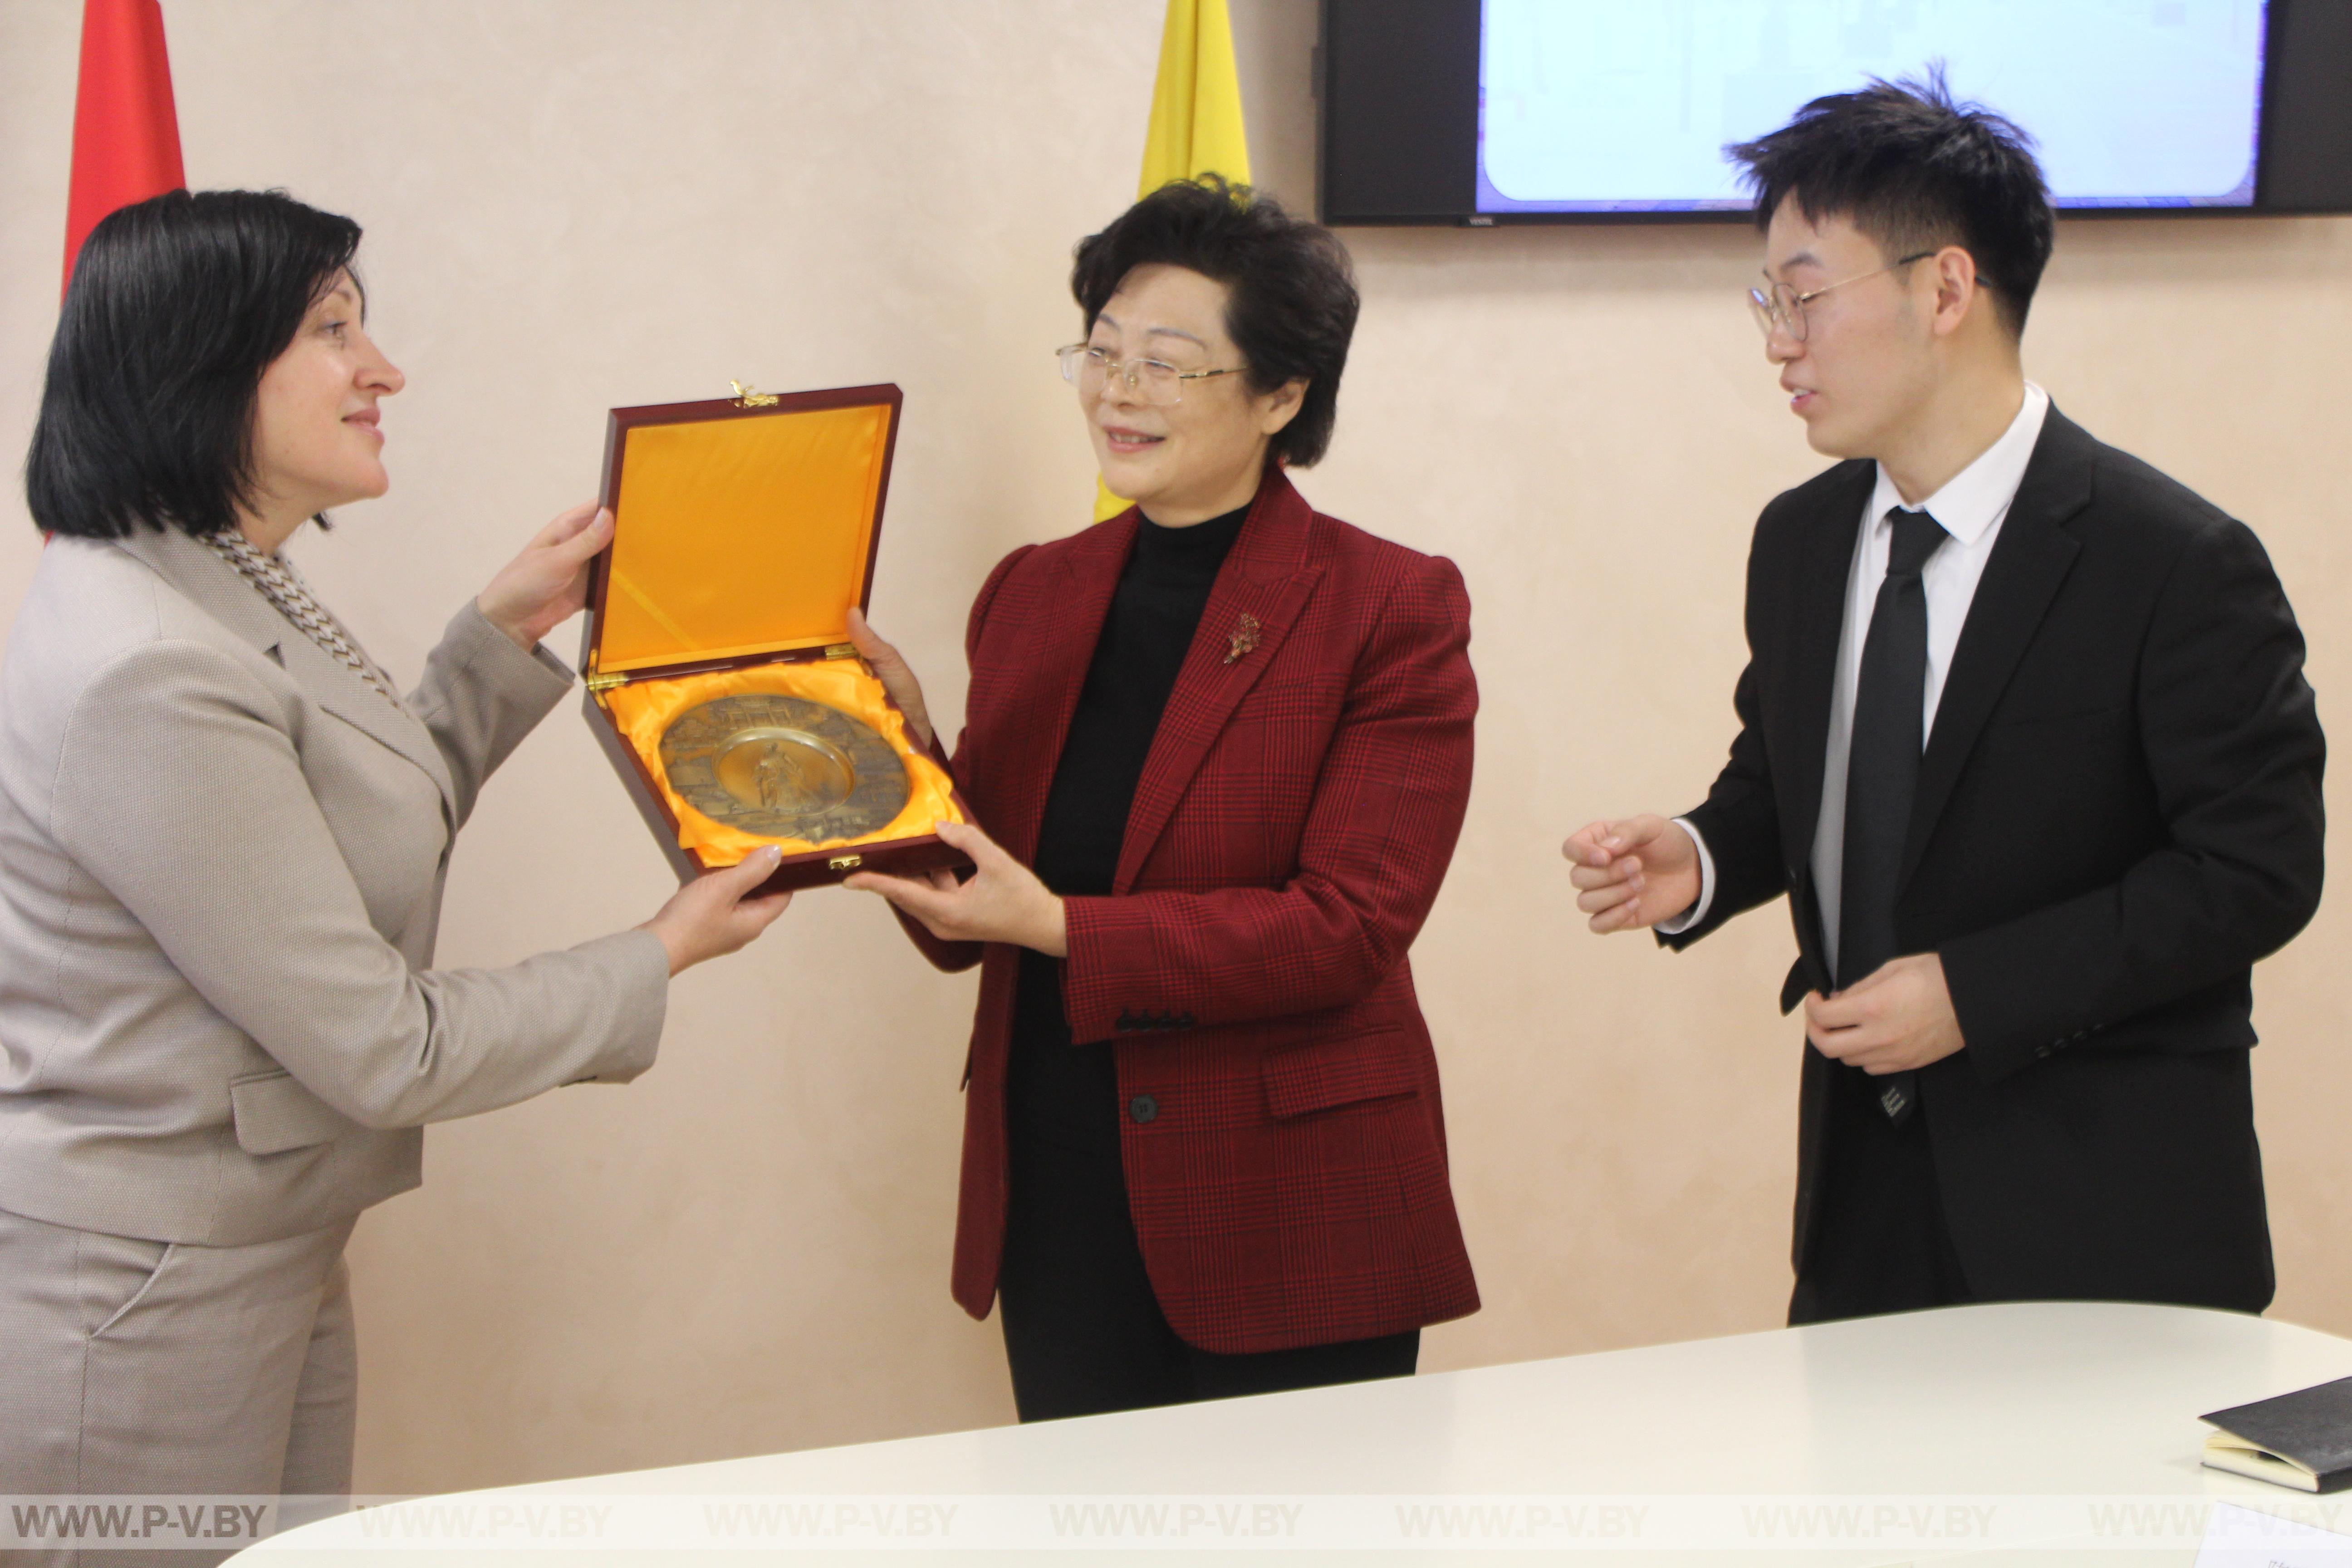 Пинск радушно принимал делегацию из китайского города Сянъян, провинция Хубэй